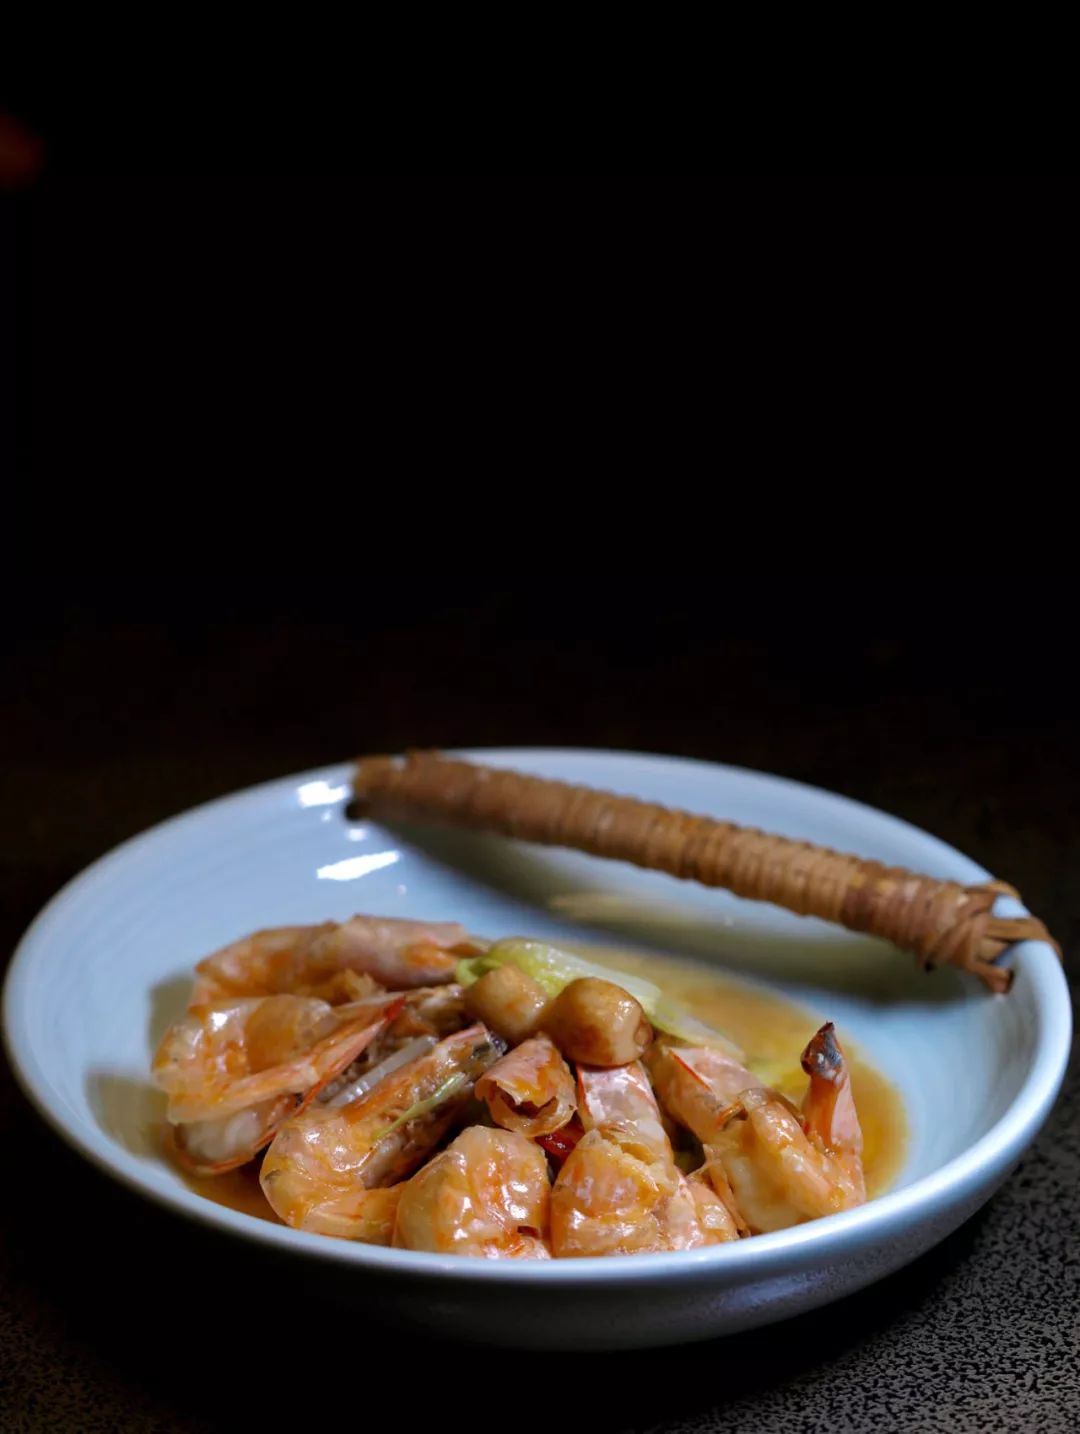 大明虾怎么做好吃 大明虾烧白菜 好吃又好做的横菜端上桌